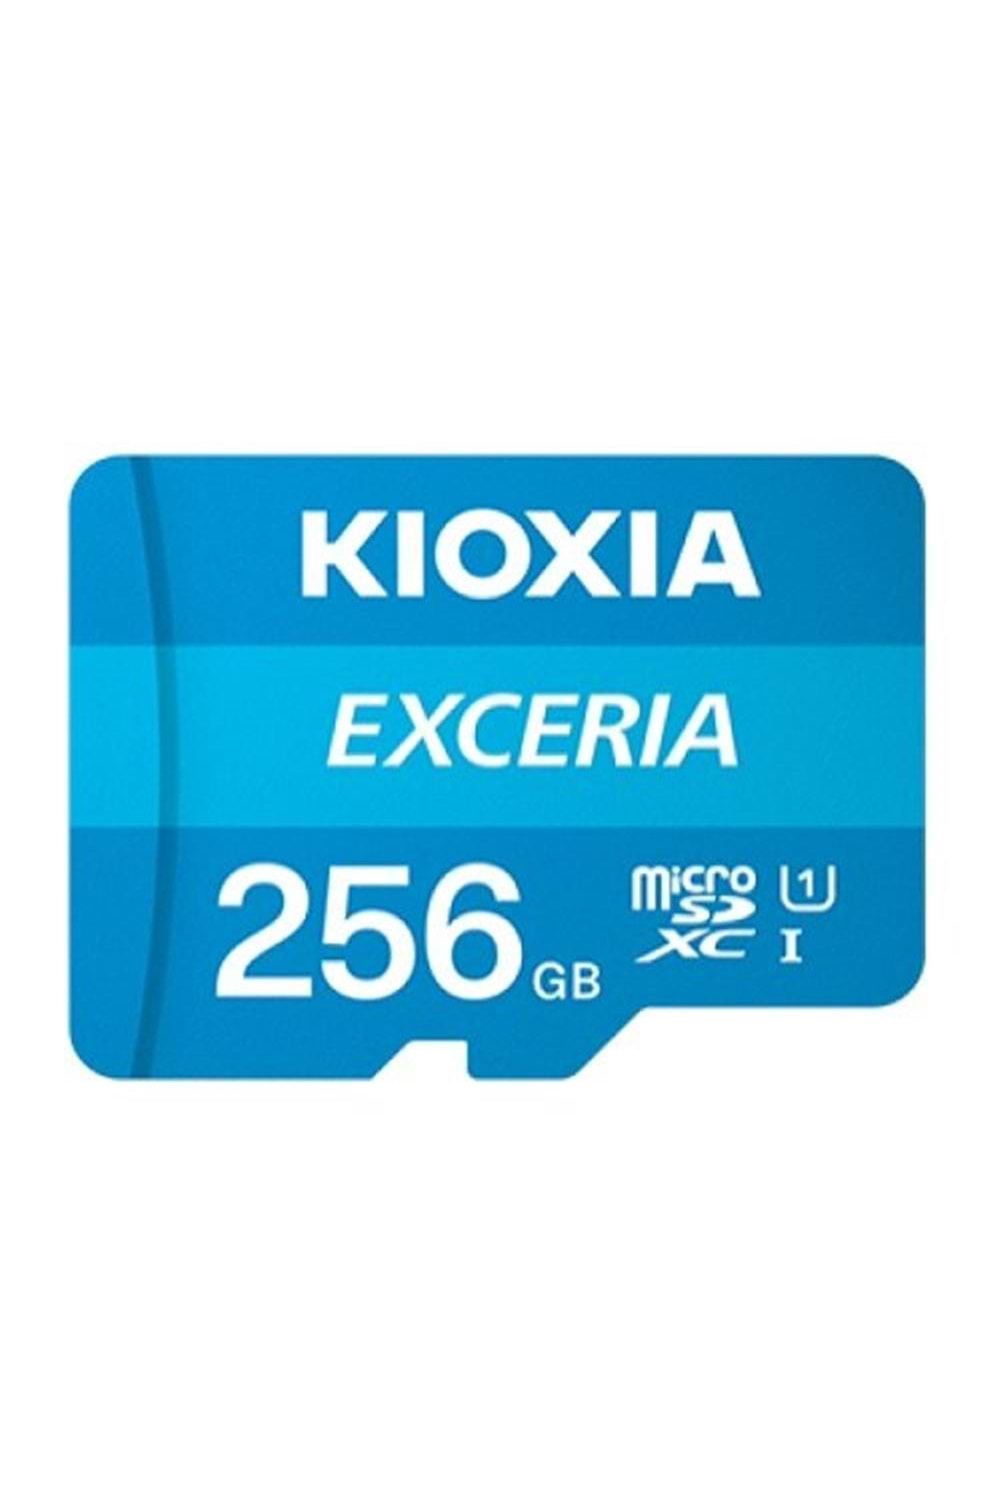 Kioxia 256GB Exceria microSDXC UHS-1 C10 100MB-sn Hafıza Kartı